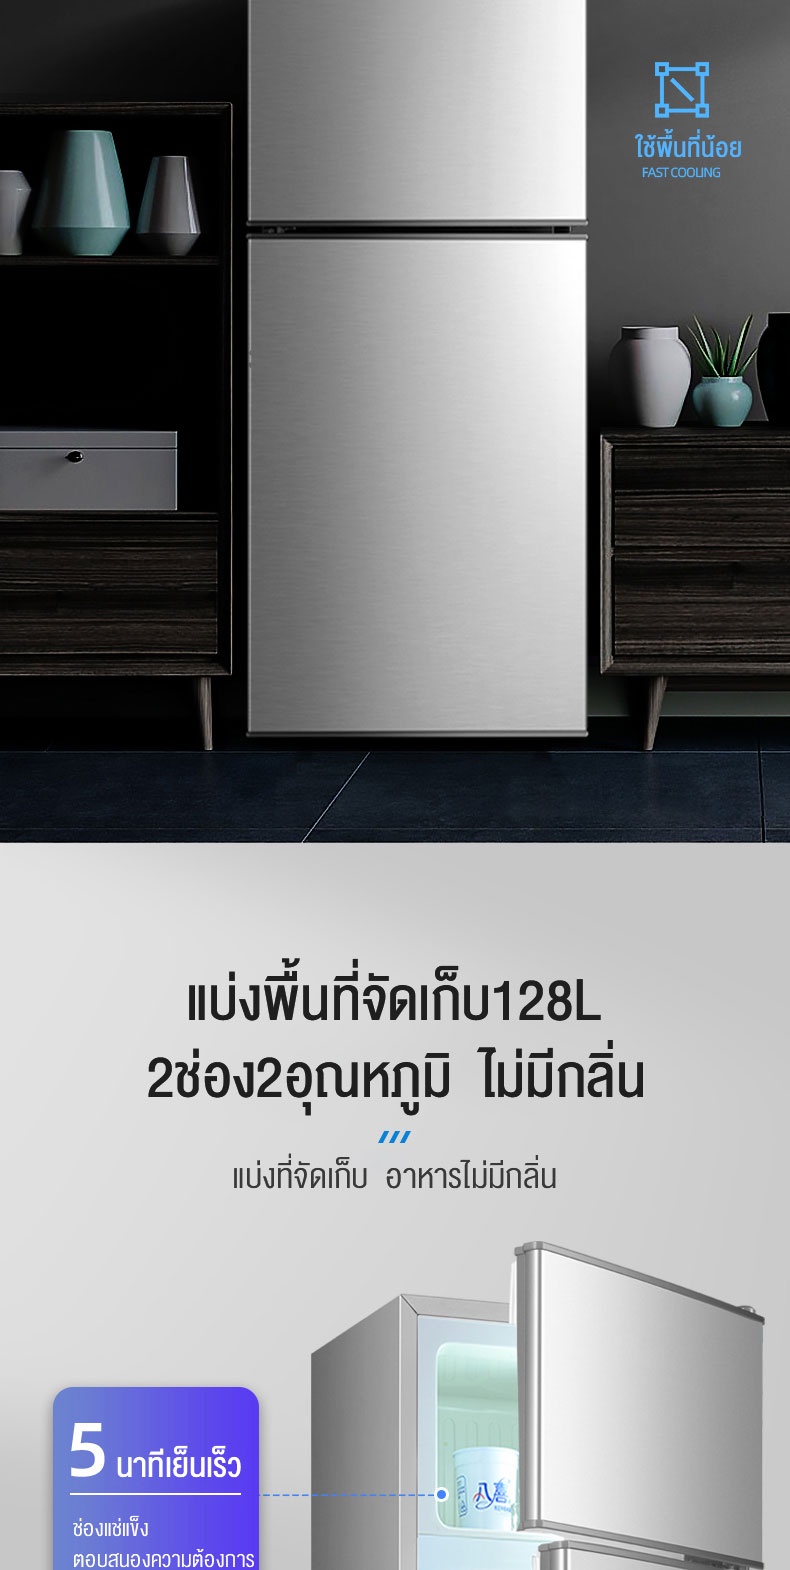 คำอธิบายเพิ่มเติมเกี่ยวกับ Biaowang ตู้เย็น 2 ประตู 161Lตู้เย็นที่บ้าน ตู้เย็นสองประตู เสียงรบกวนต่ำและประหยัดพลังงาน ตู้เย็นอพาร์ทเมนท์ 4.2Qความจุ